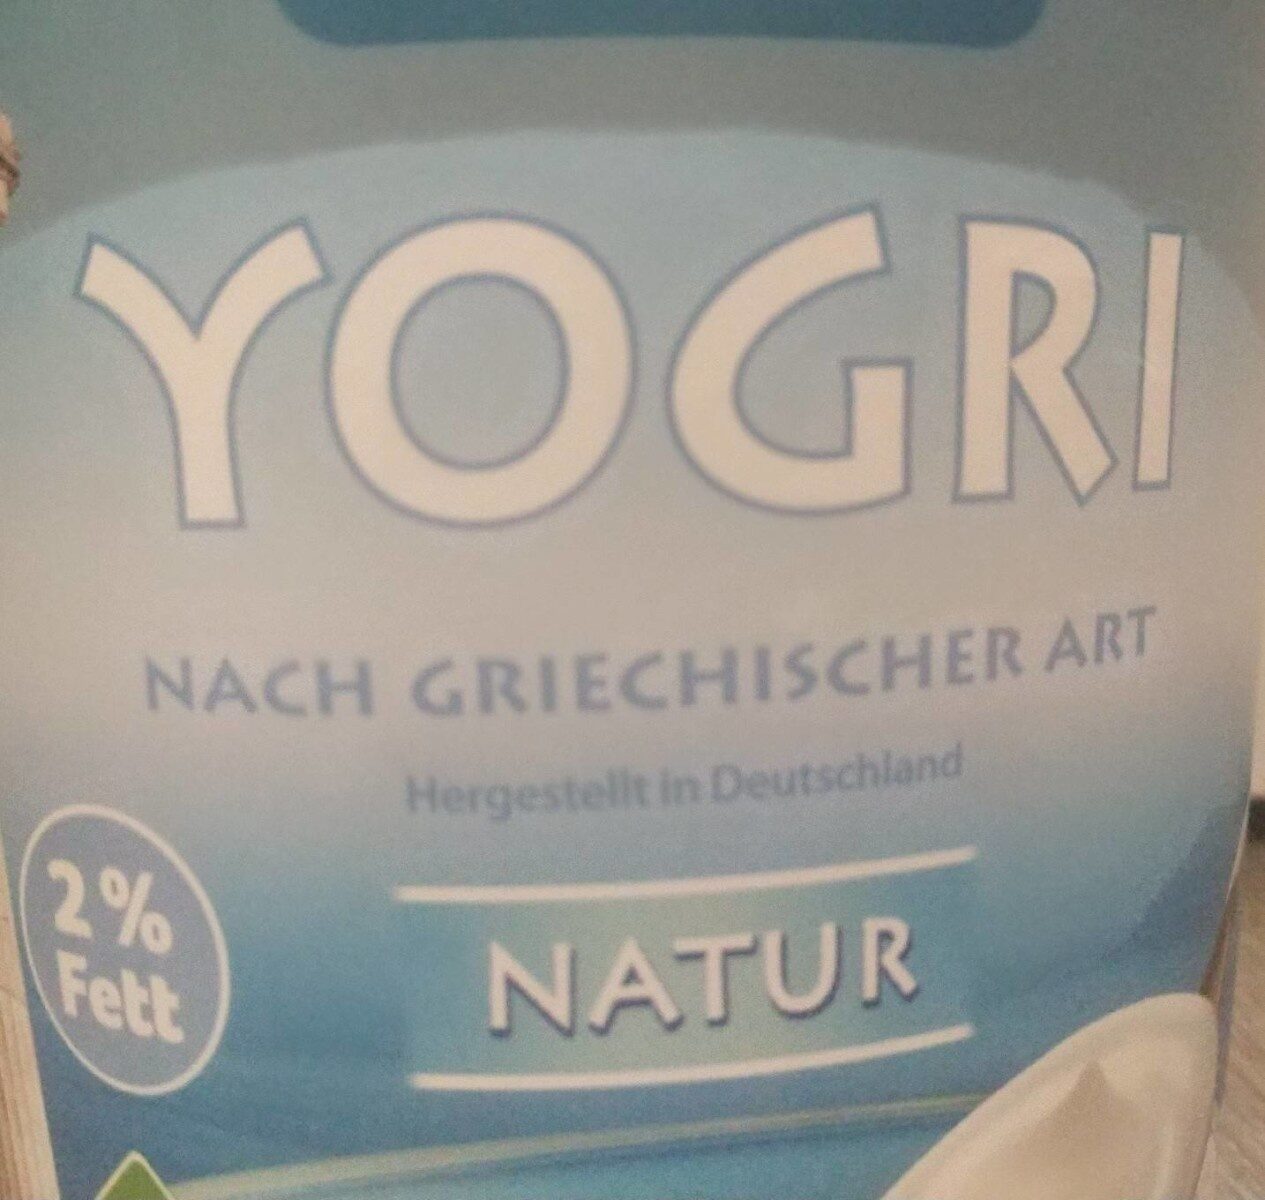 Yogri nach griechischer Art - 2% Fett - Produkt